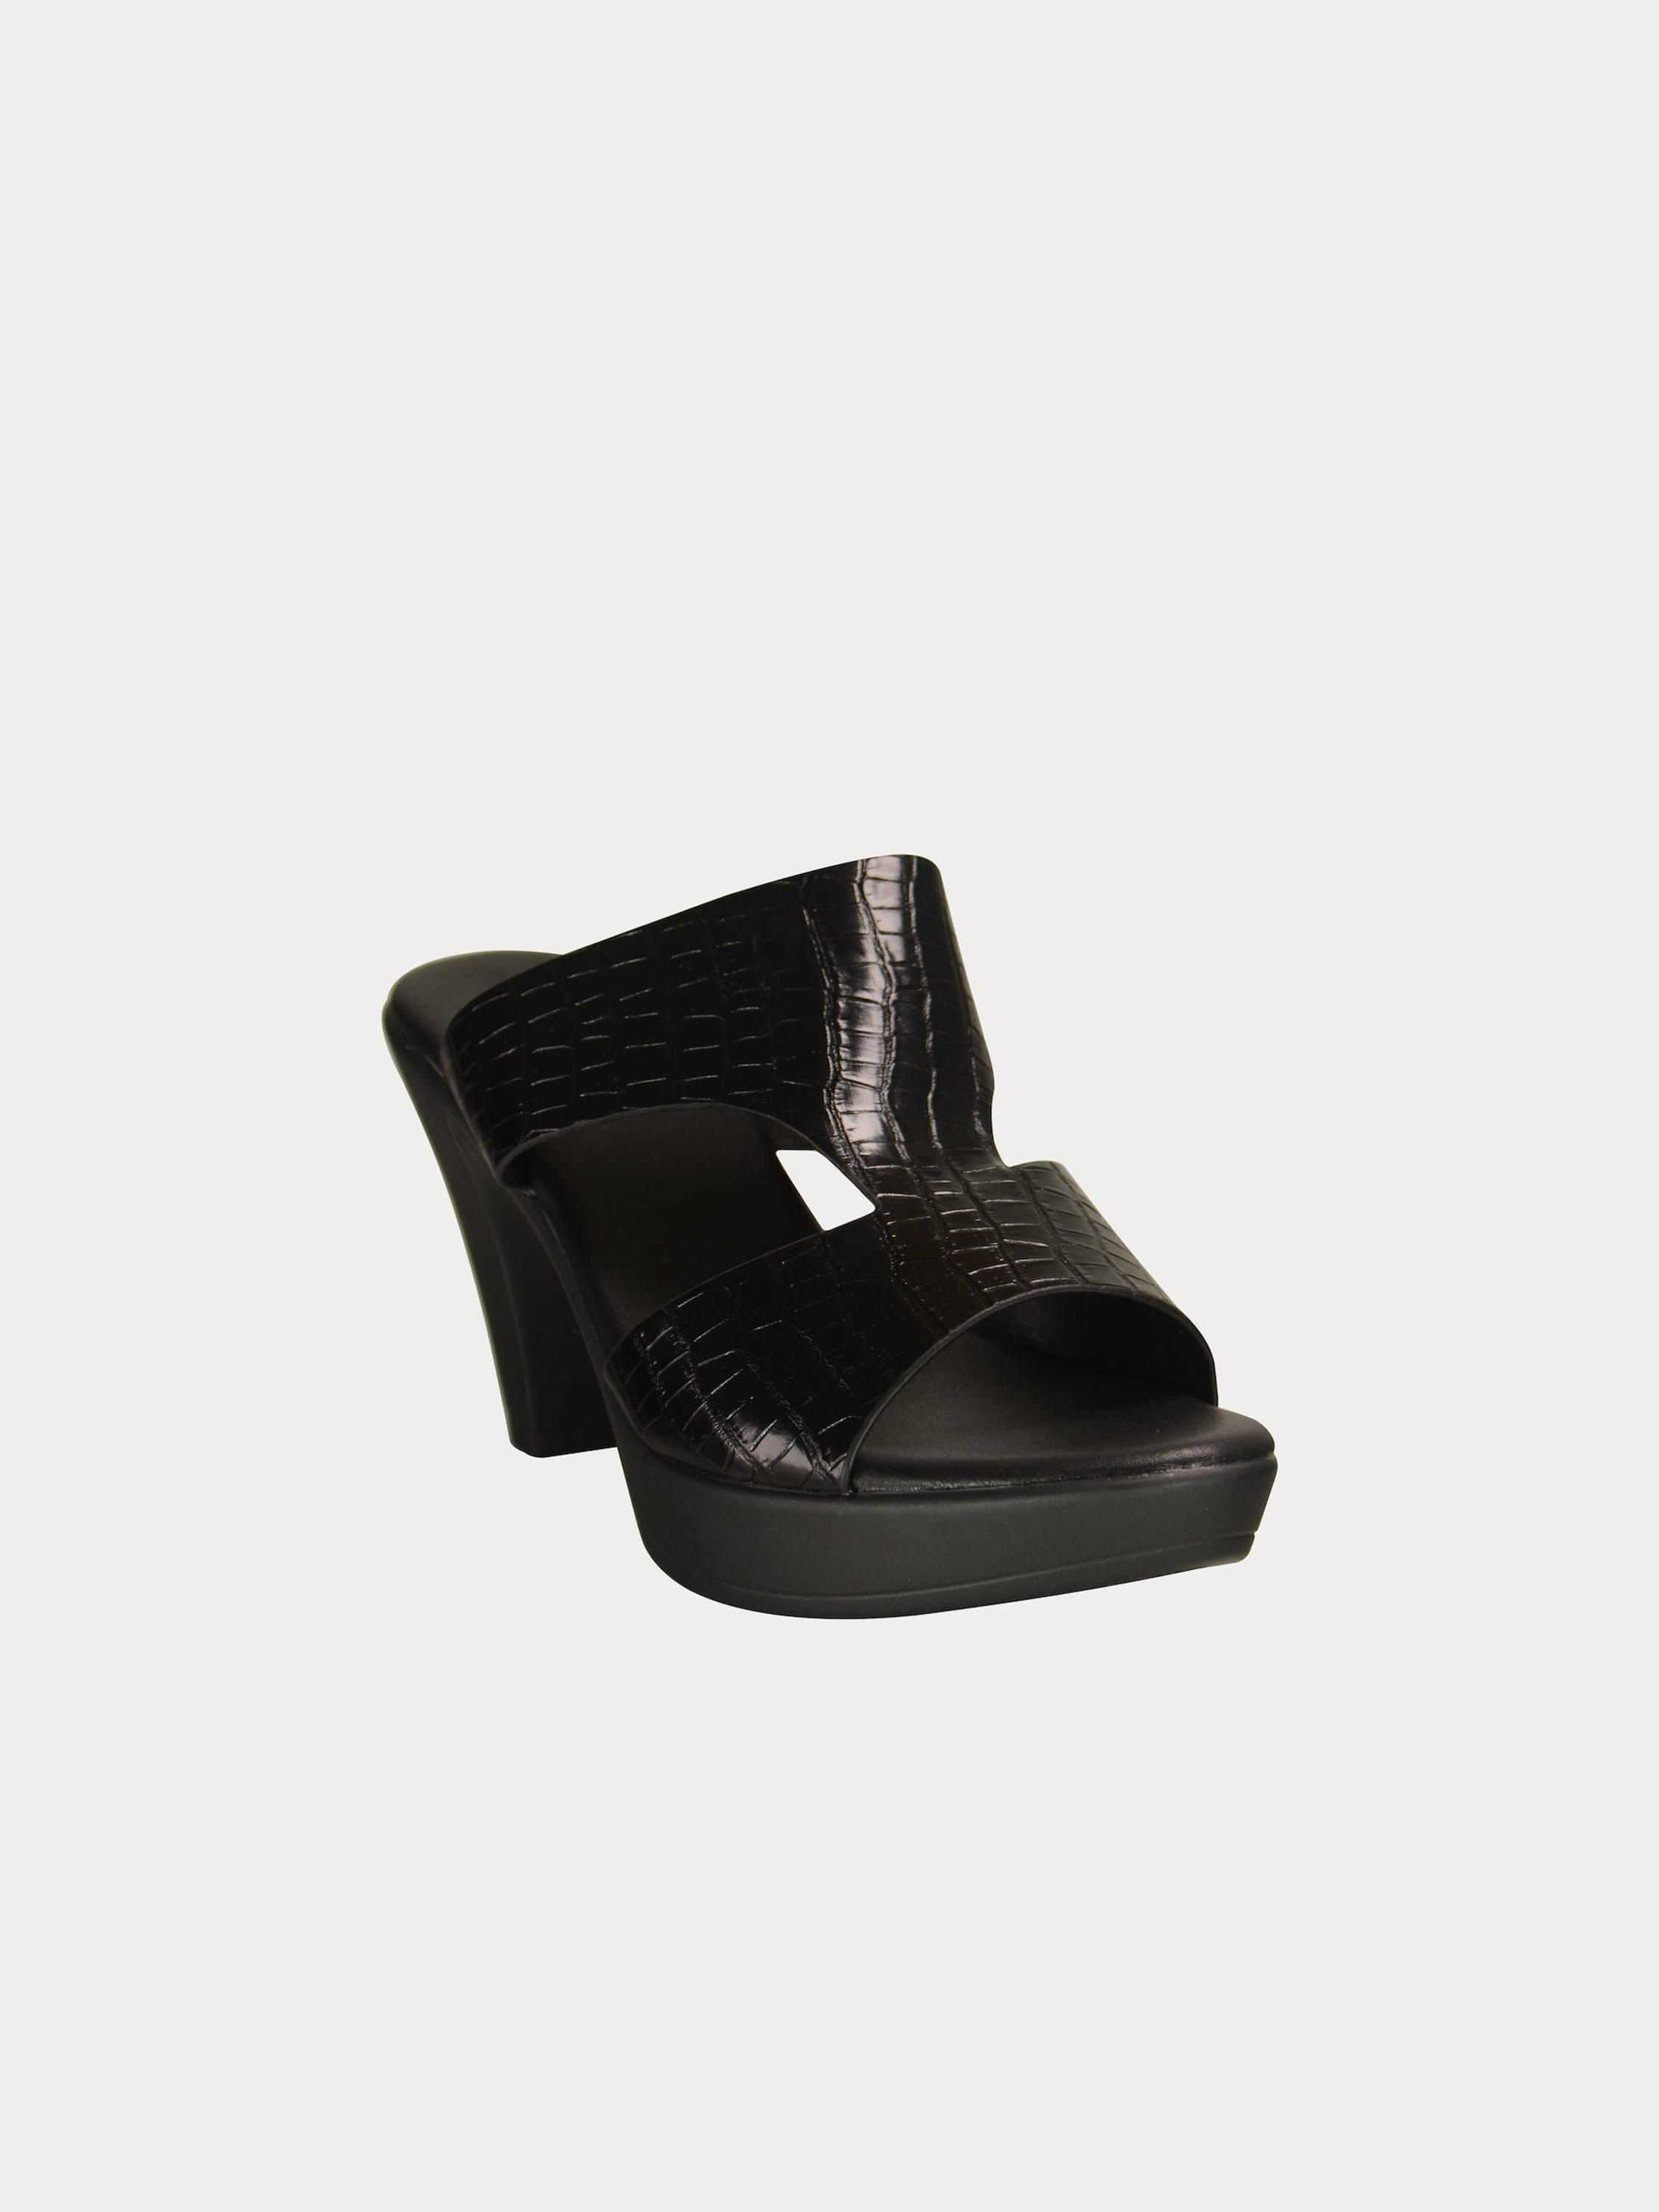 Michelle Morgan 913RJ095 Women's Heeled Sandals #color_Black